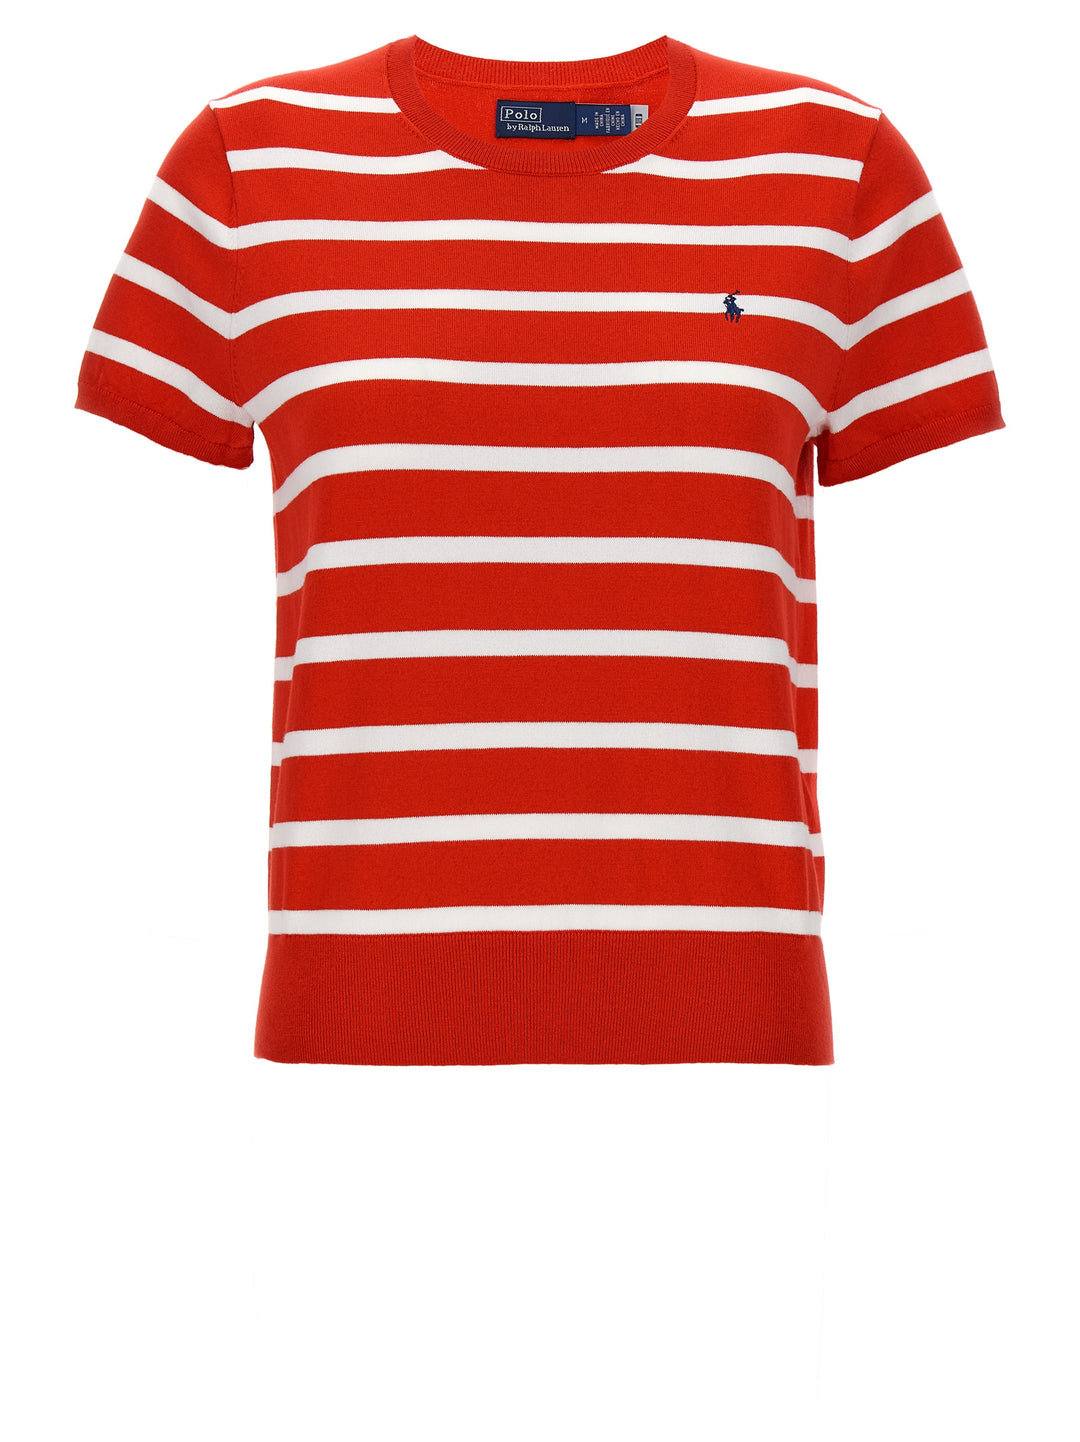 Striped Sweater Maglioni Rosso